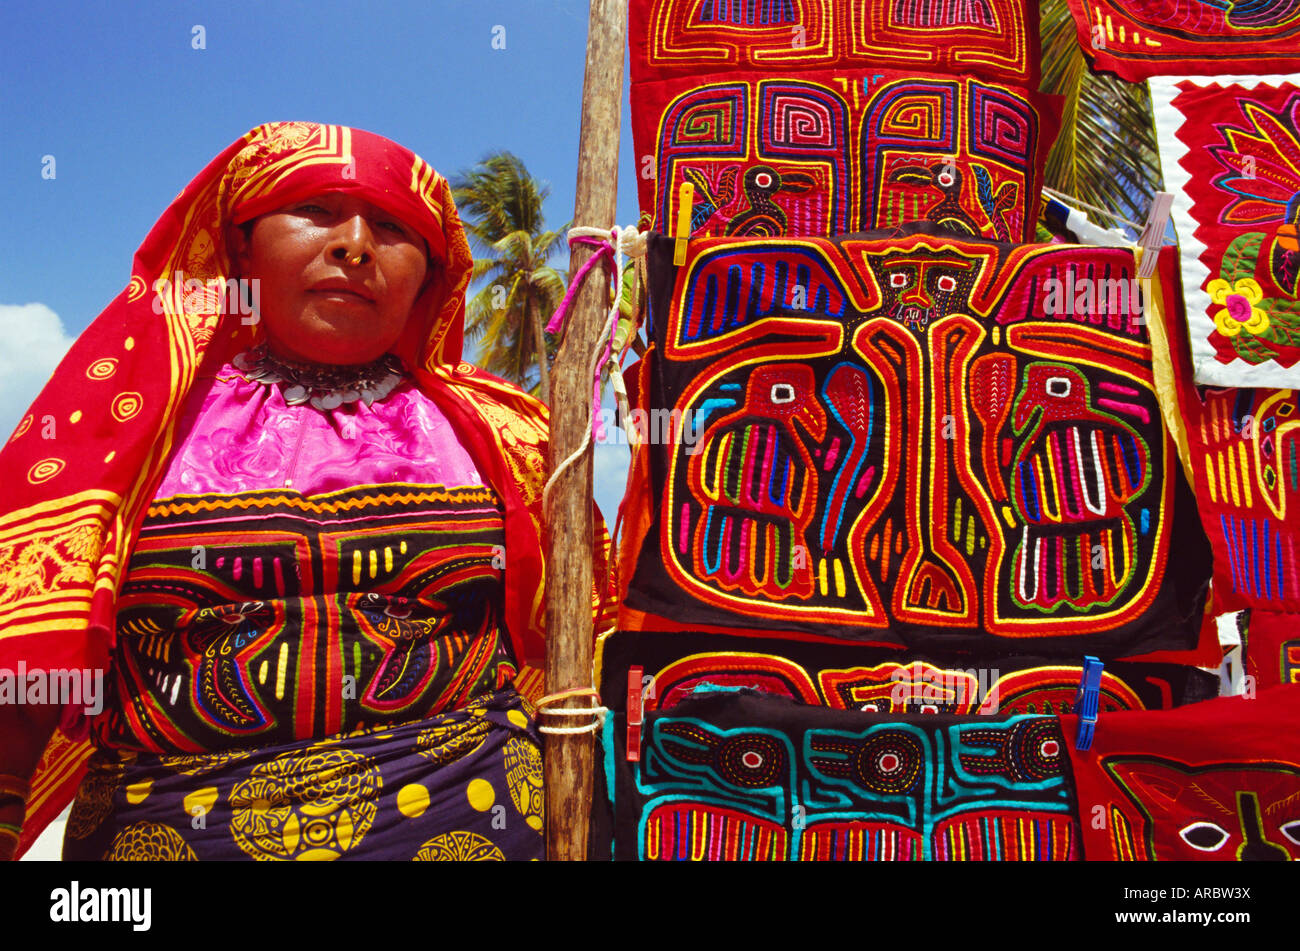 Cuna donna indiana visualizza il suo molas (indumenti tradizionali), isole San Blas, Panama America Centrale Foto Stock